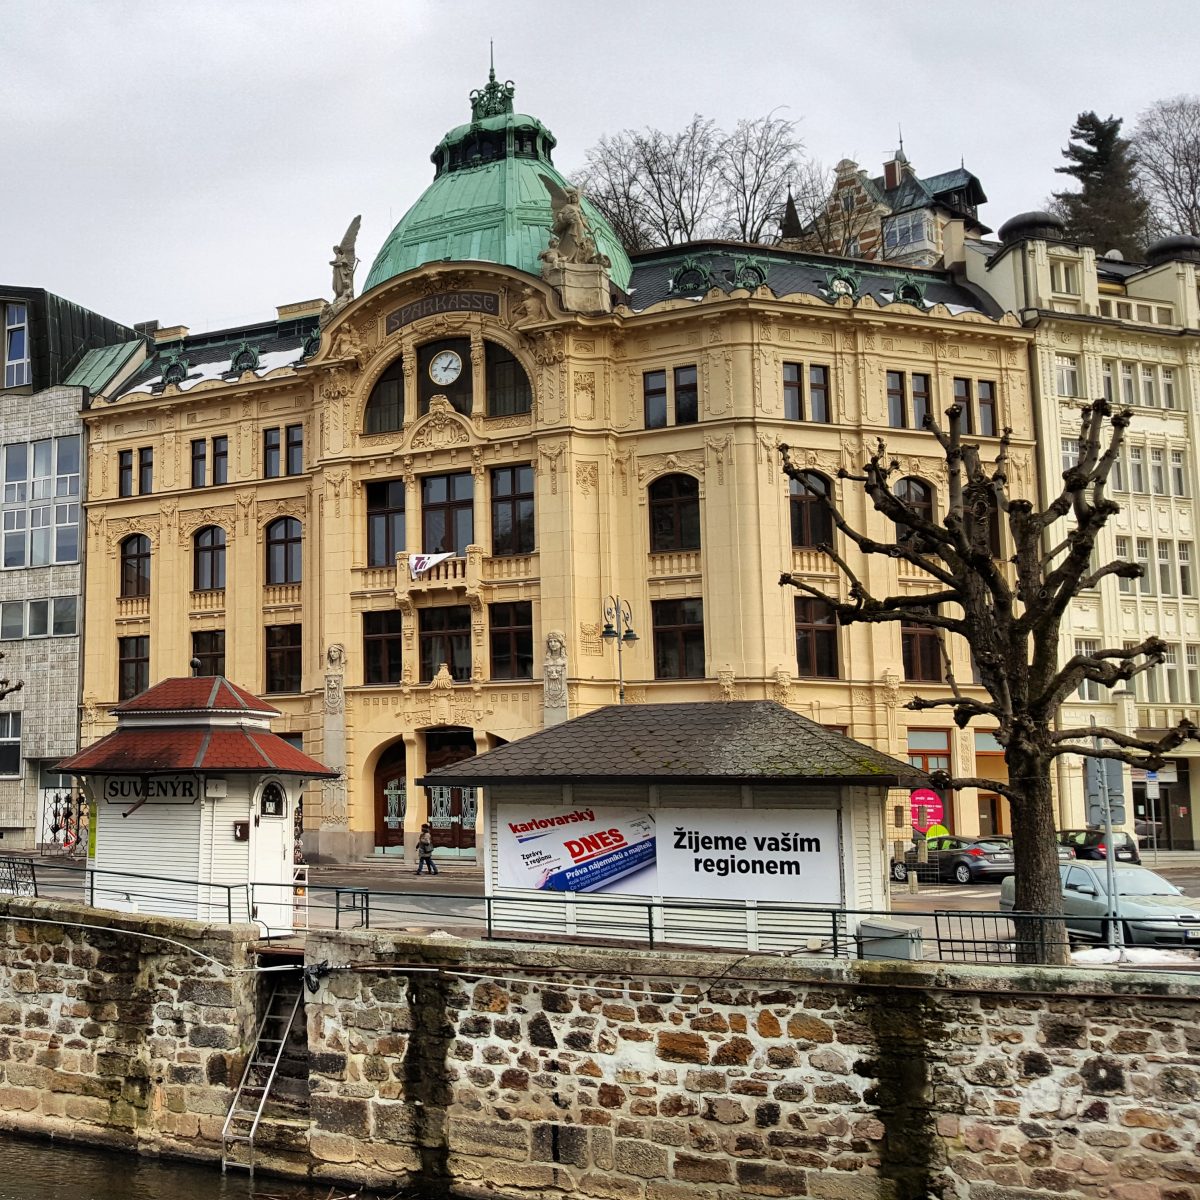 Karlsbad in Tschechien: Über der Uhr ist der deutschsprachige Schriftzug „Sparkasse“ zu erkennen. (Foto: Michael Voß)